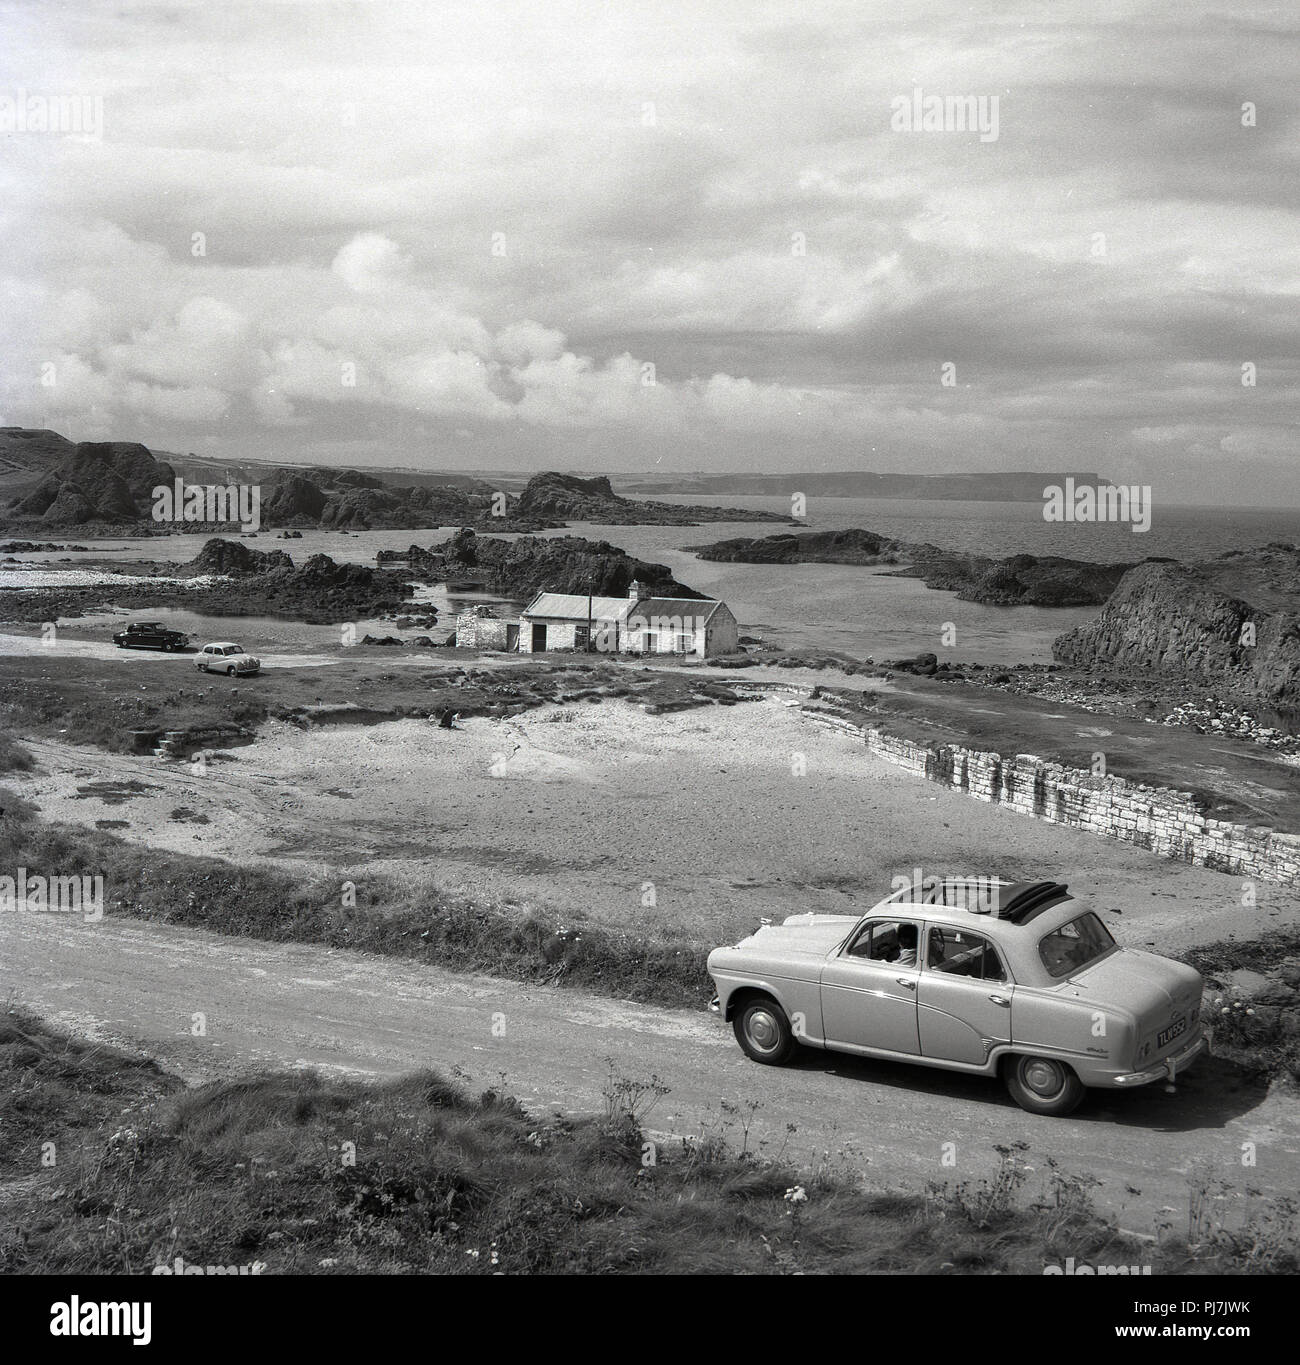 Années 1950, historique photo od une voiture garée par une charmante baie déserte sur la côte d'Antrim, Irlande du Nord, Royaume-Uni > Banque D'Images